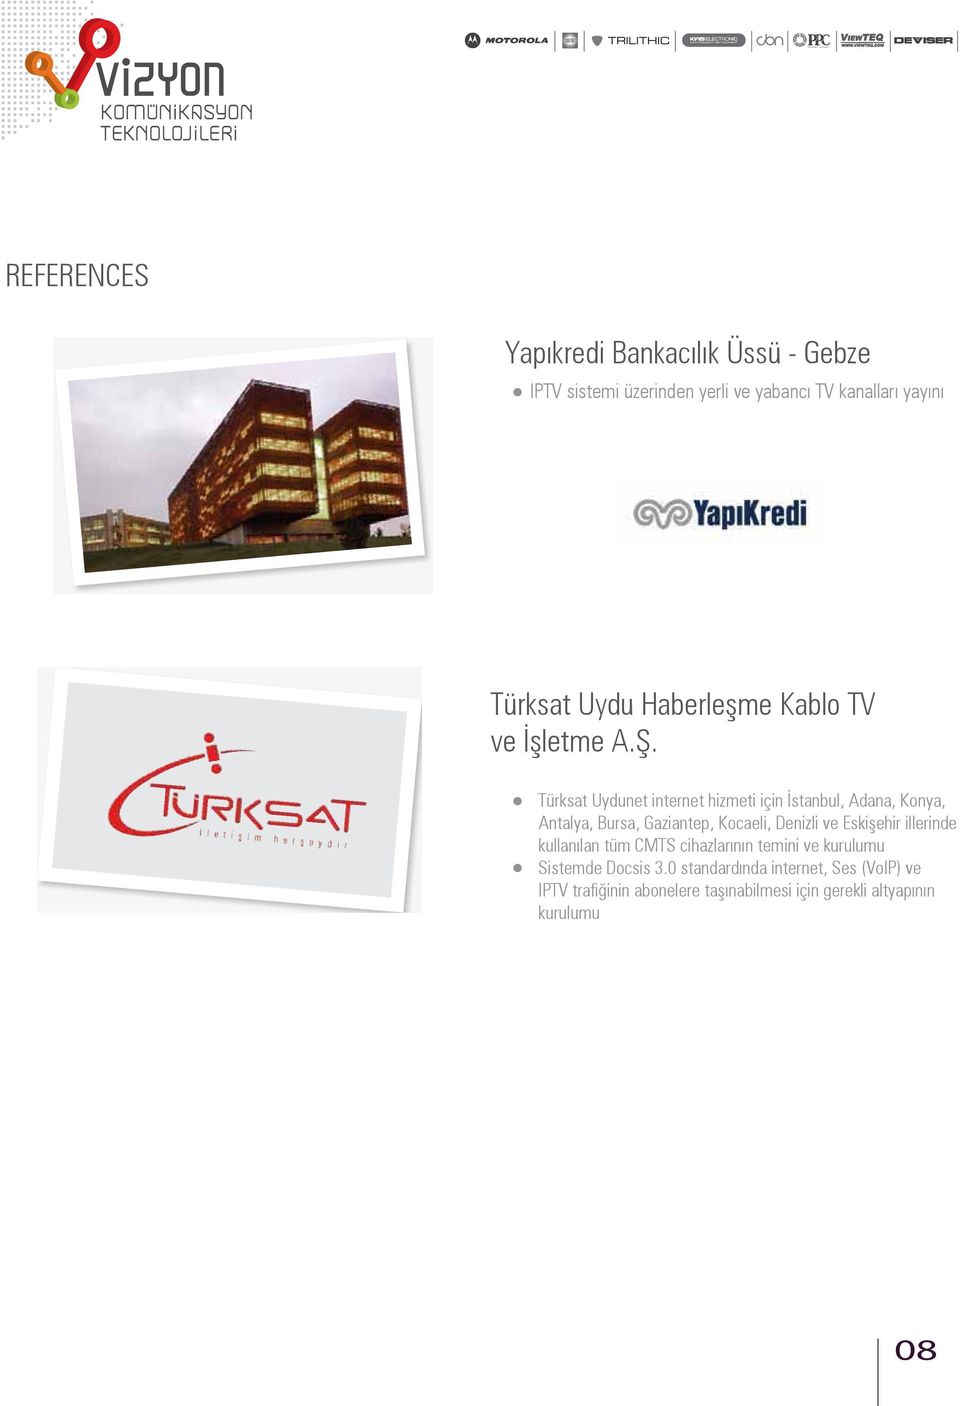 Türksat Uydunet internet hizmeti için İstanbul, Adana, Konya, Antalya, Bursa, Gaziantep, Kocaeli, Denizli ve